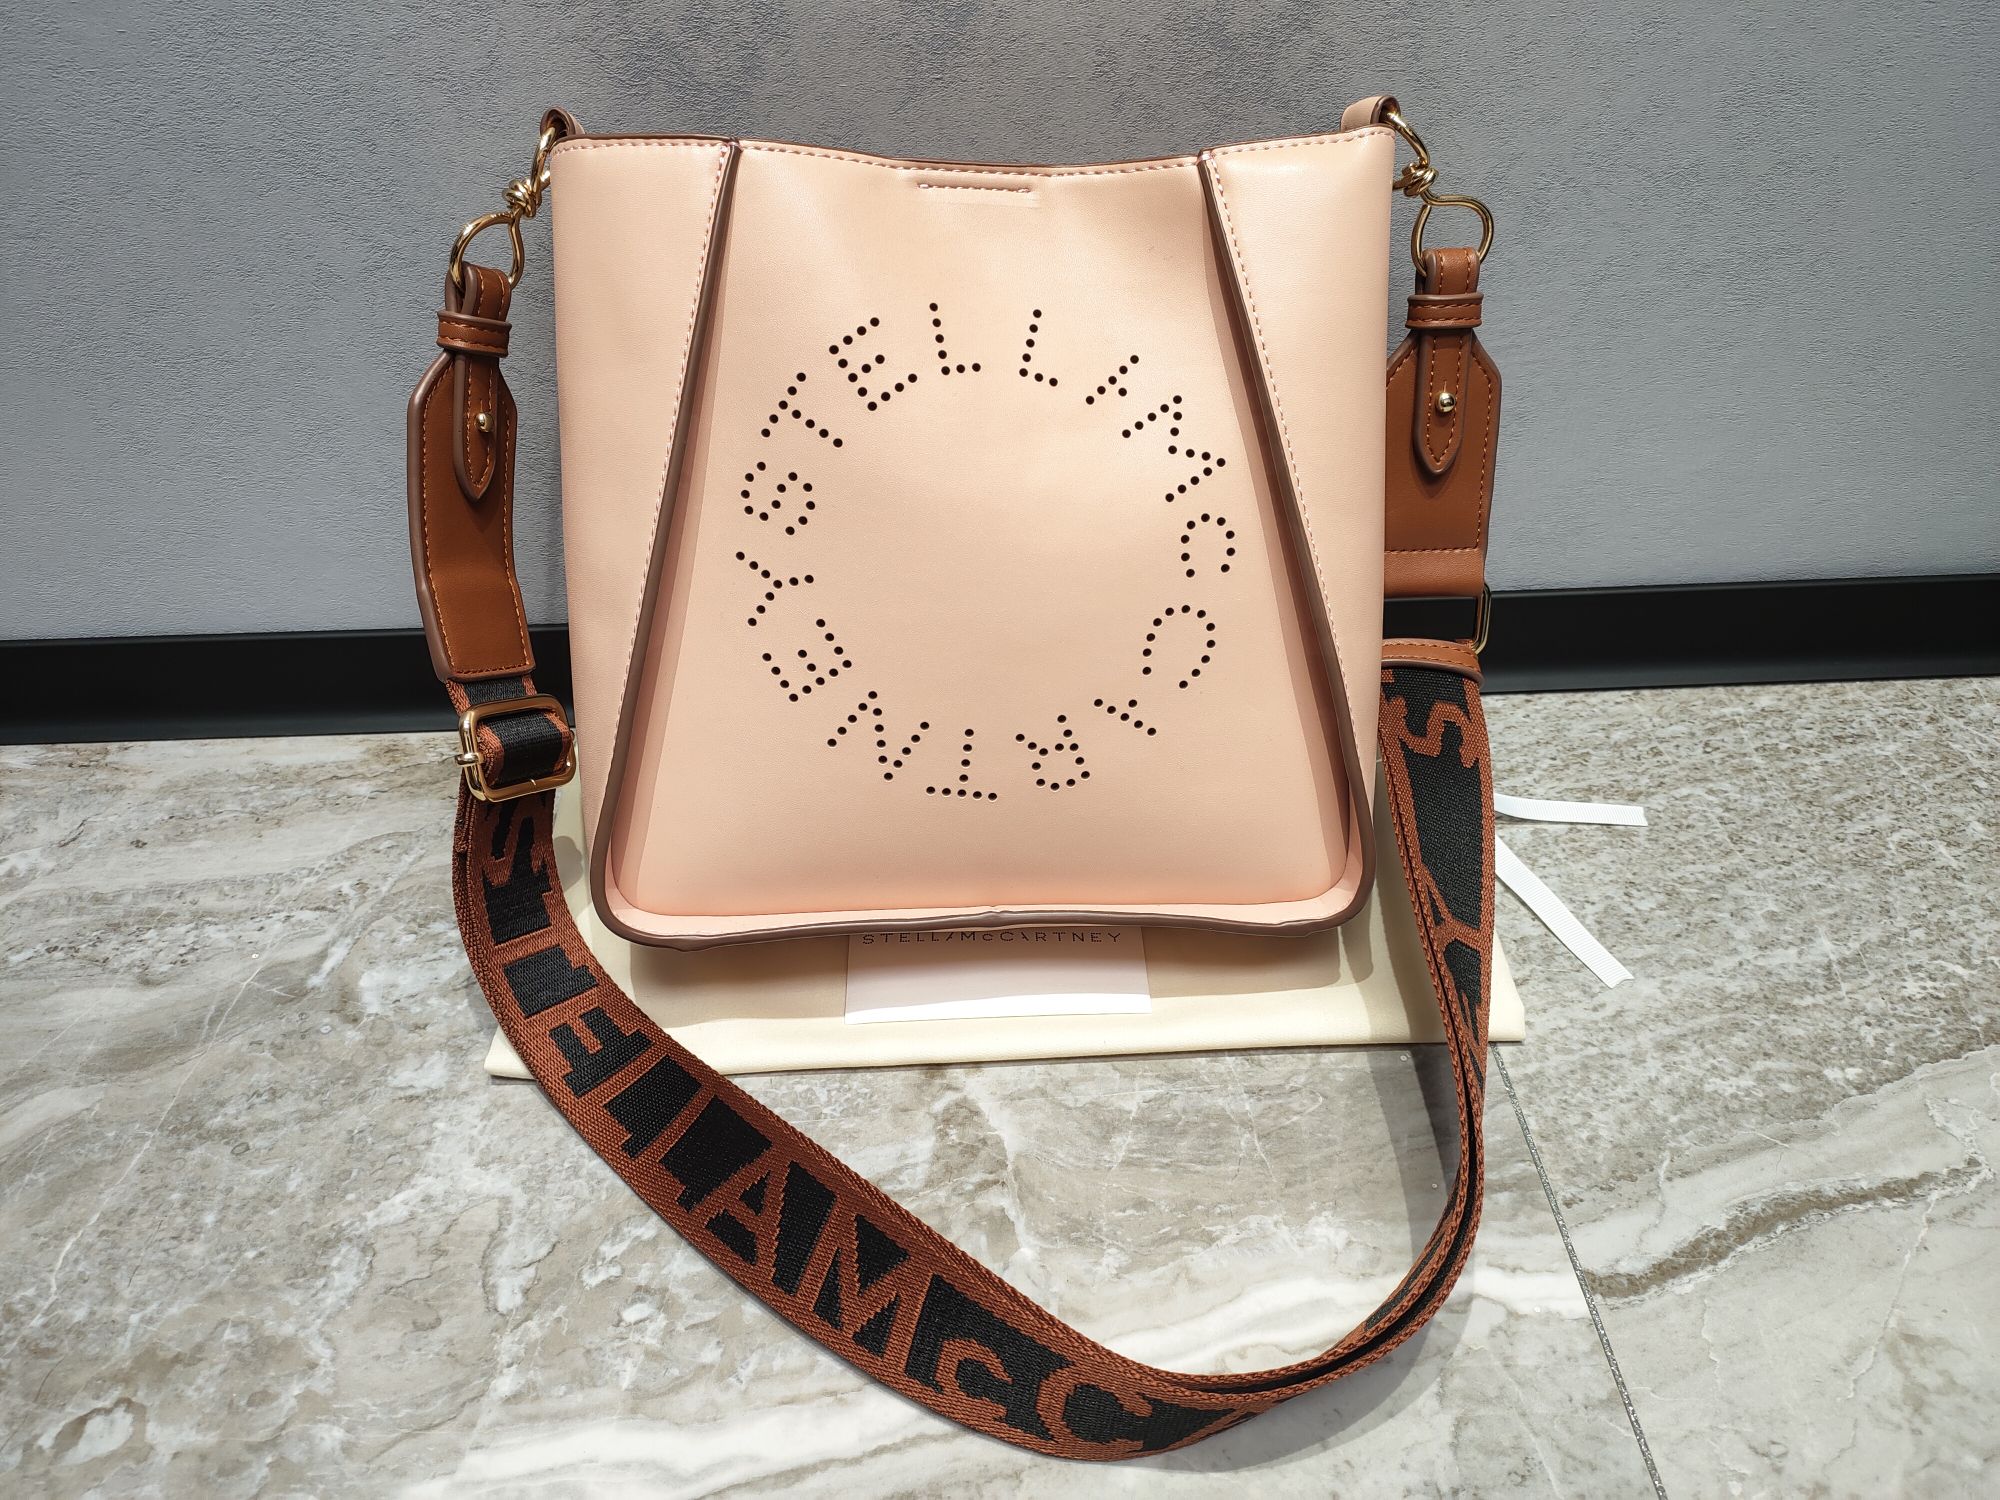 Stella McCartney حقيبة حقيبة الكتف &حقيبة كروس بودي العمل المفتوح موضة